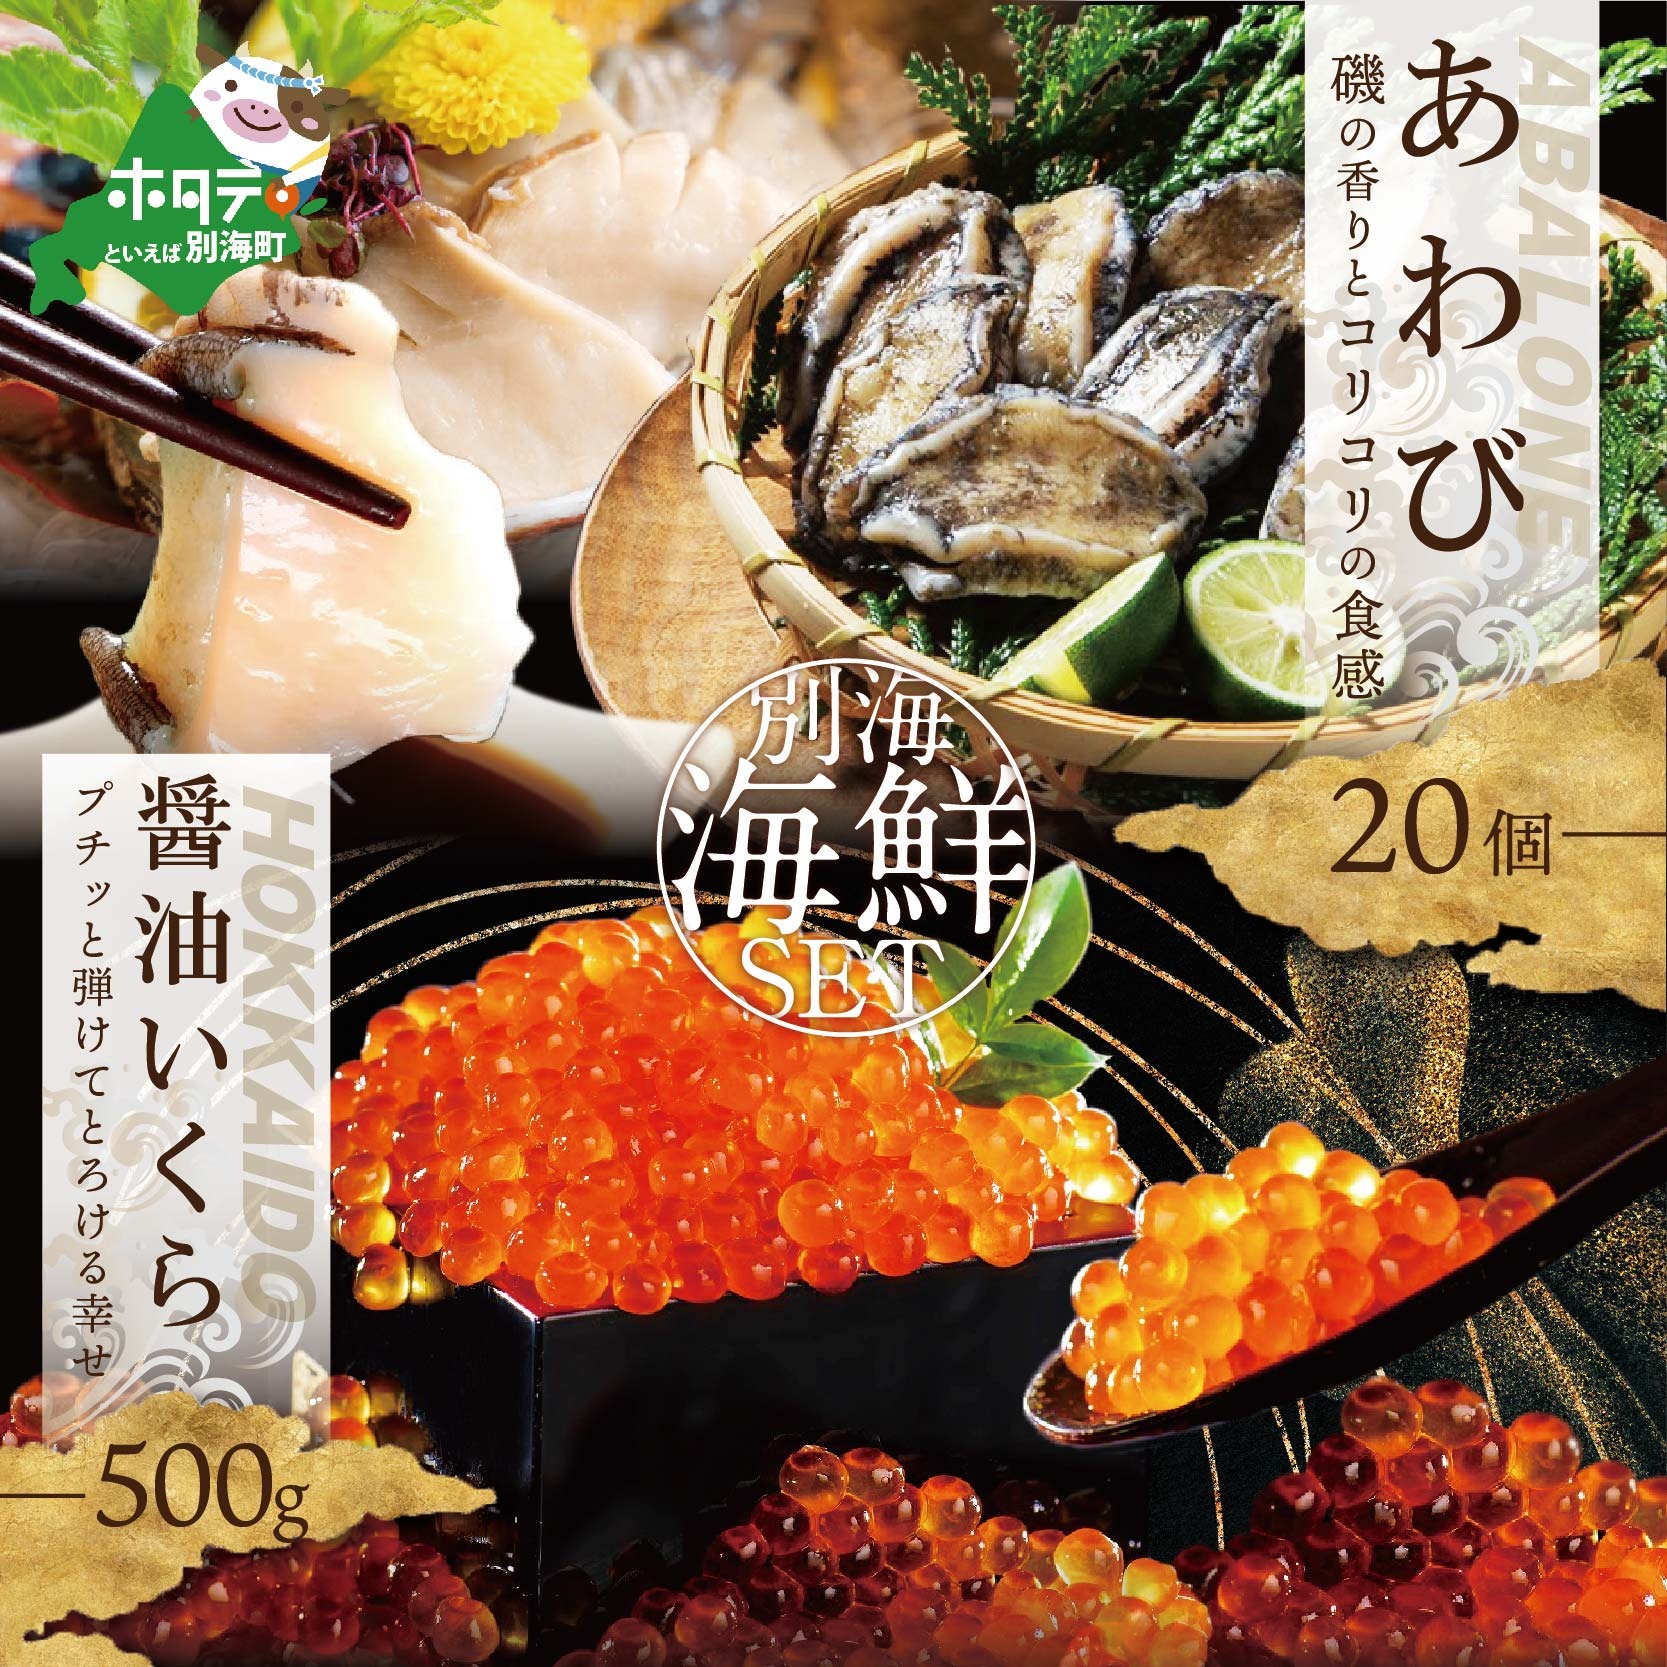 アワビ ･ いくら 海鮮セット アワビ 20個 + 北海道産醤油いくら500g